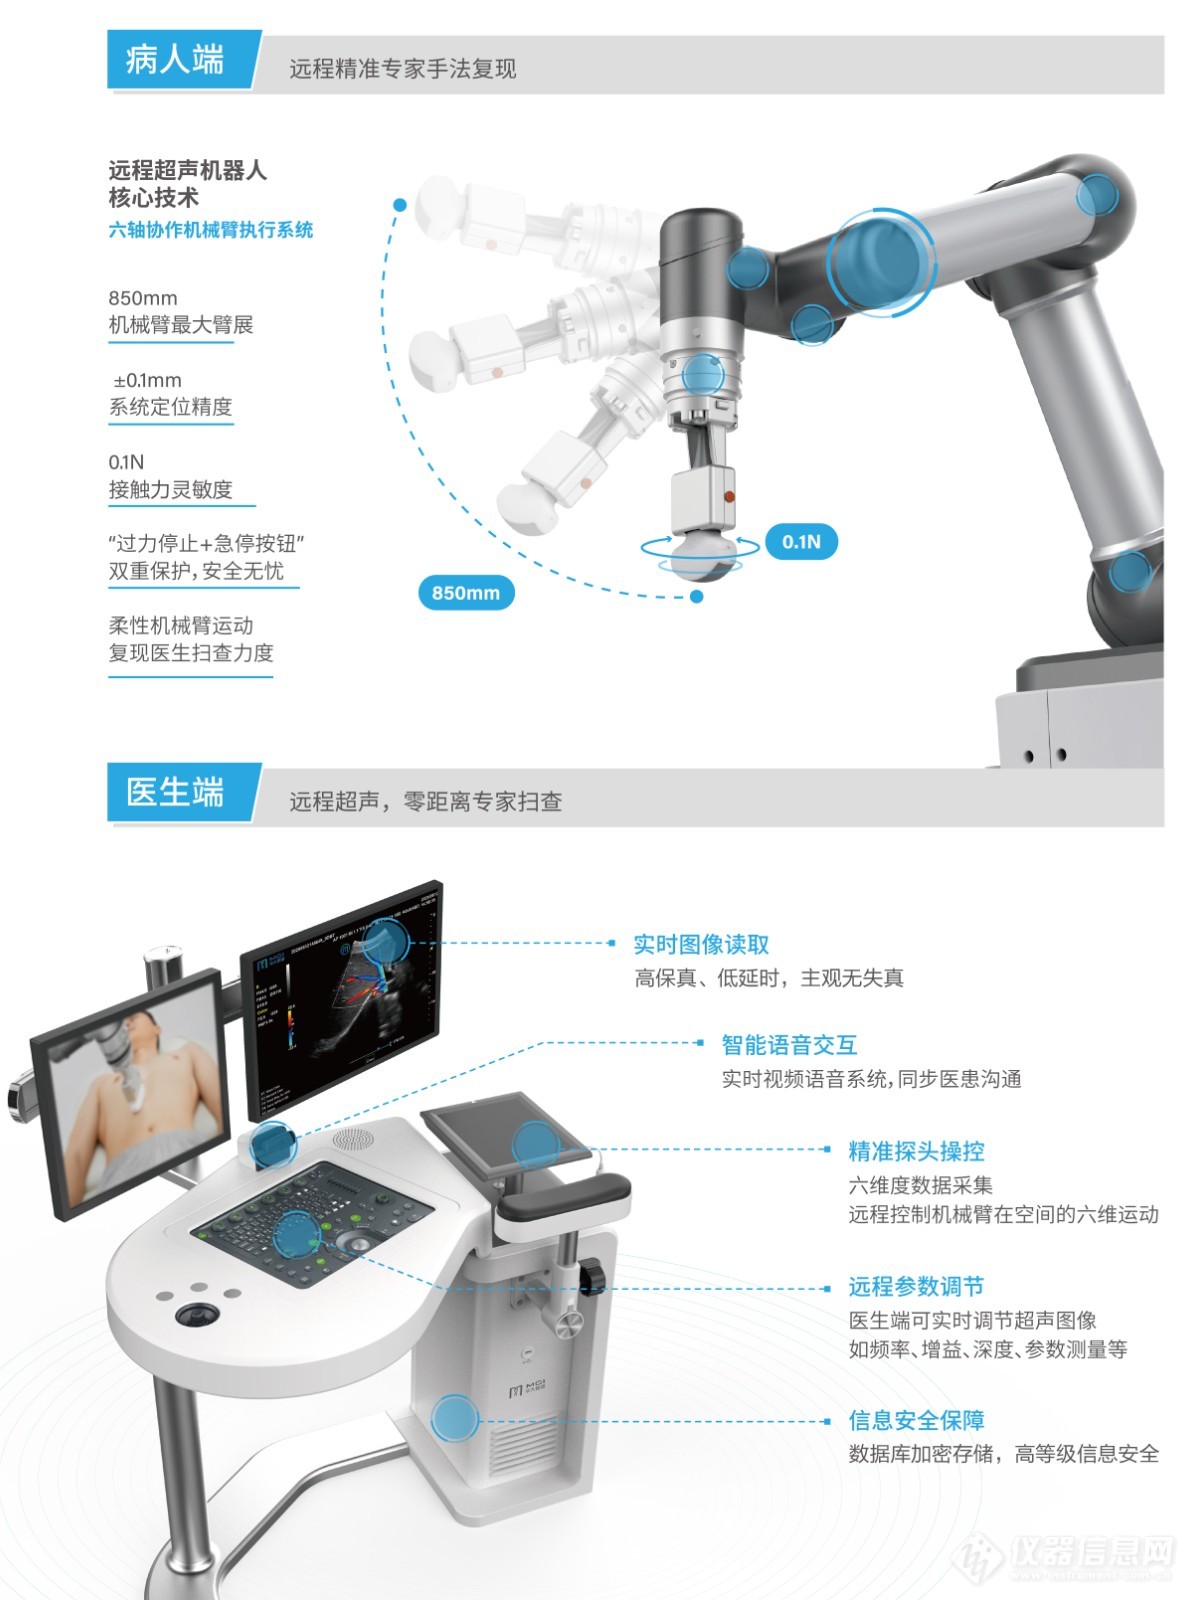 远程超声机器人诊断系统三折页--中文版-深圳20210105-2.jpg